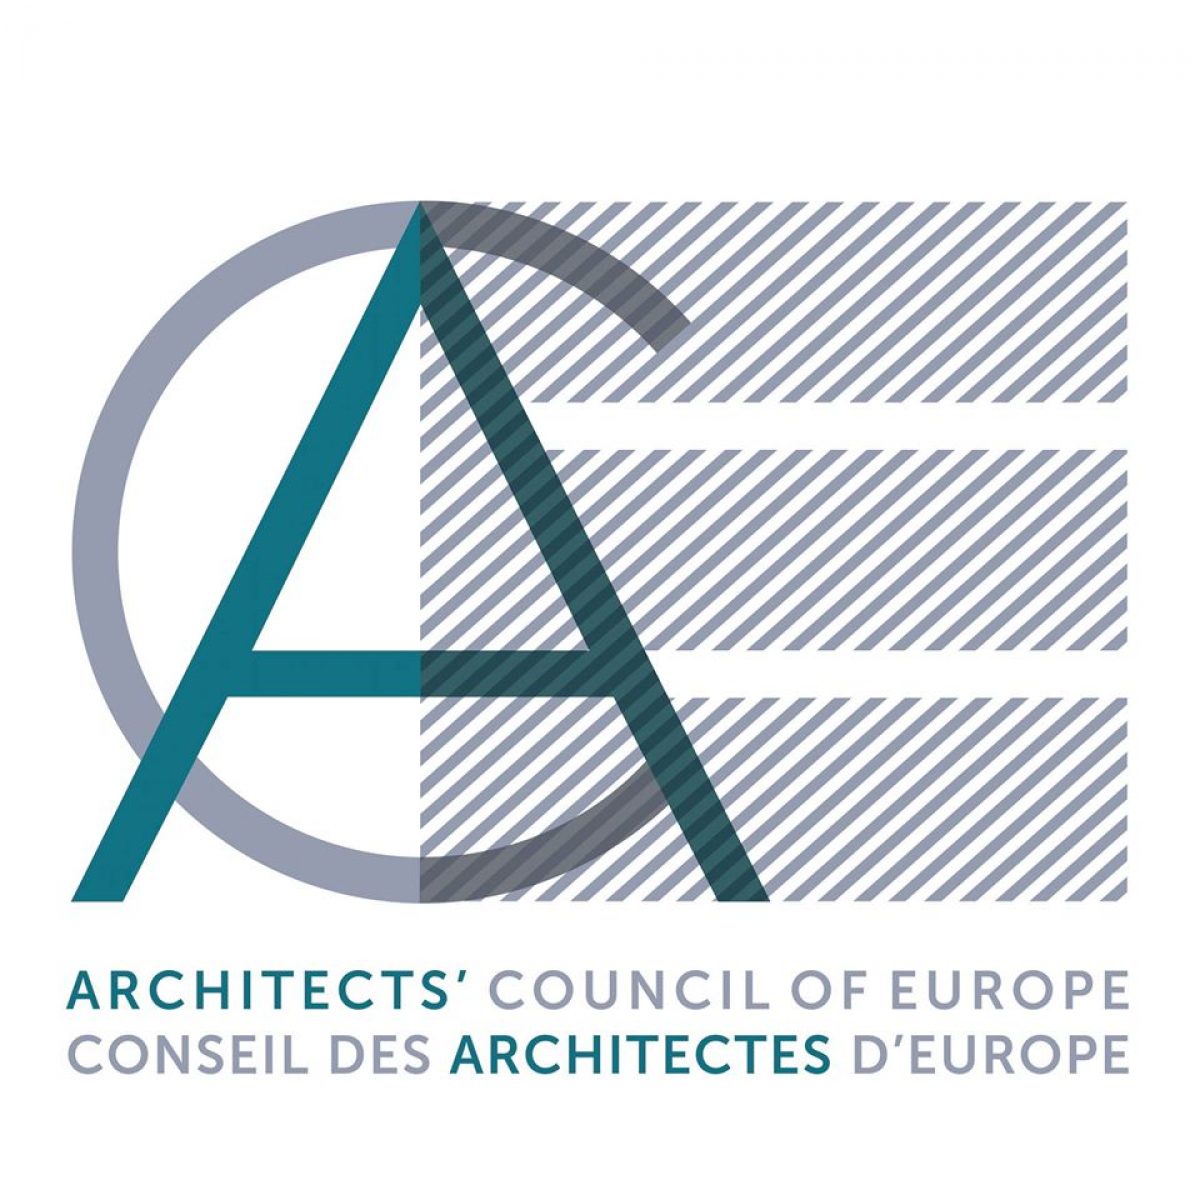 Ευρωπαϊκό Συμβούλιο Αρχιτεκτόνων (ACE/CAE) : Εθνικά σχέδια δράσης – Ανακοίνωση Ευρωπαϊκής Ενωσης σχετικά με την αξιολόγηση των εθνικών ρυθμίσεων για την πρόσβαση στα επαγγέλματα – COM(2013)676)